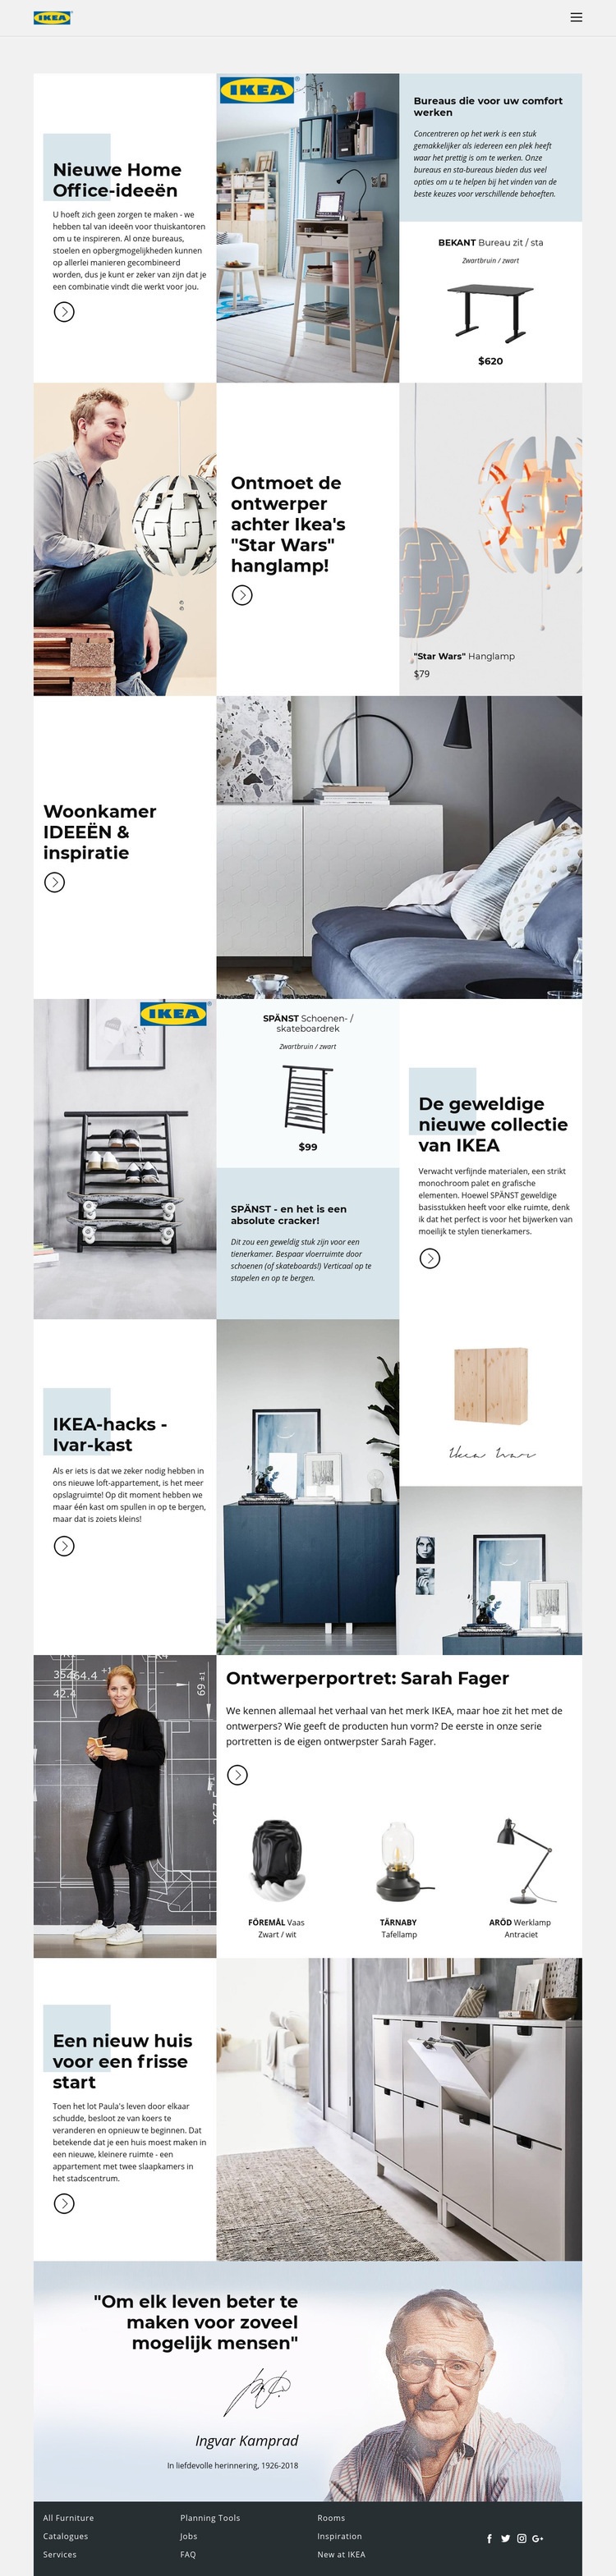 Inspiratie van IKEA Sjabloon voor één pagina